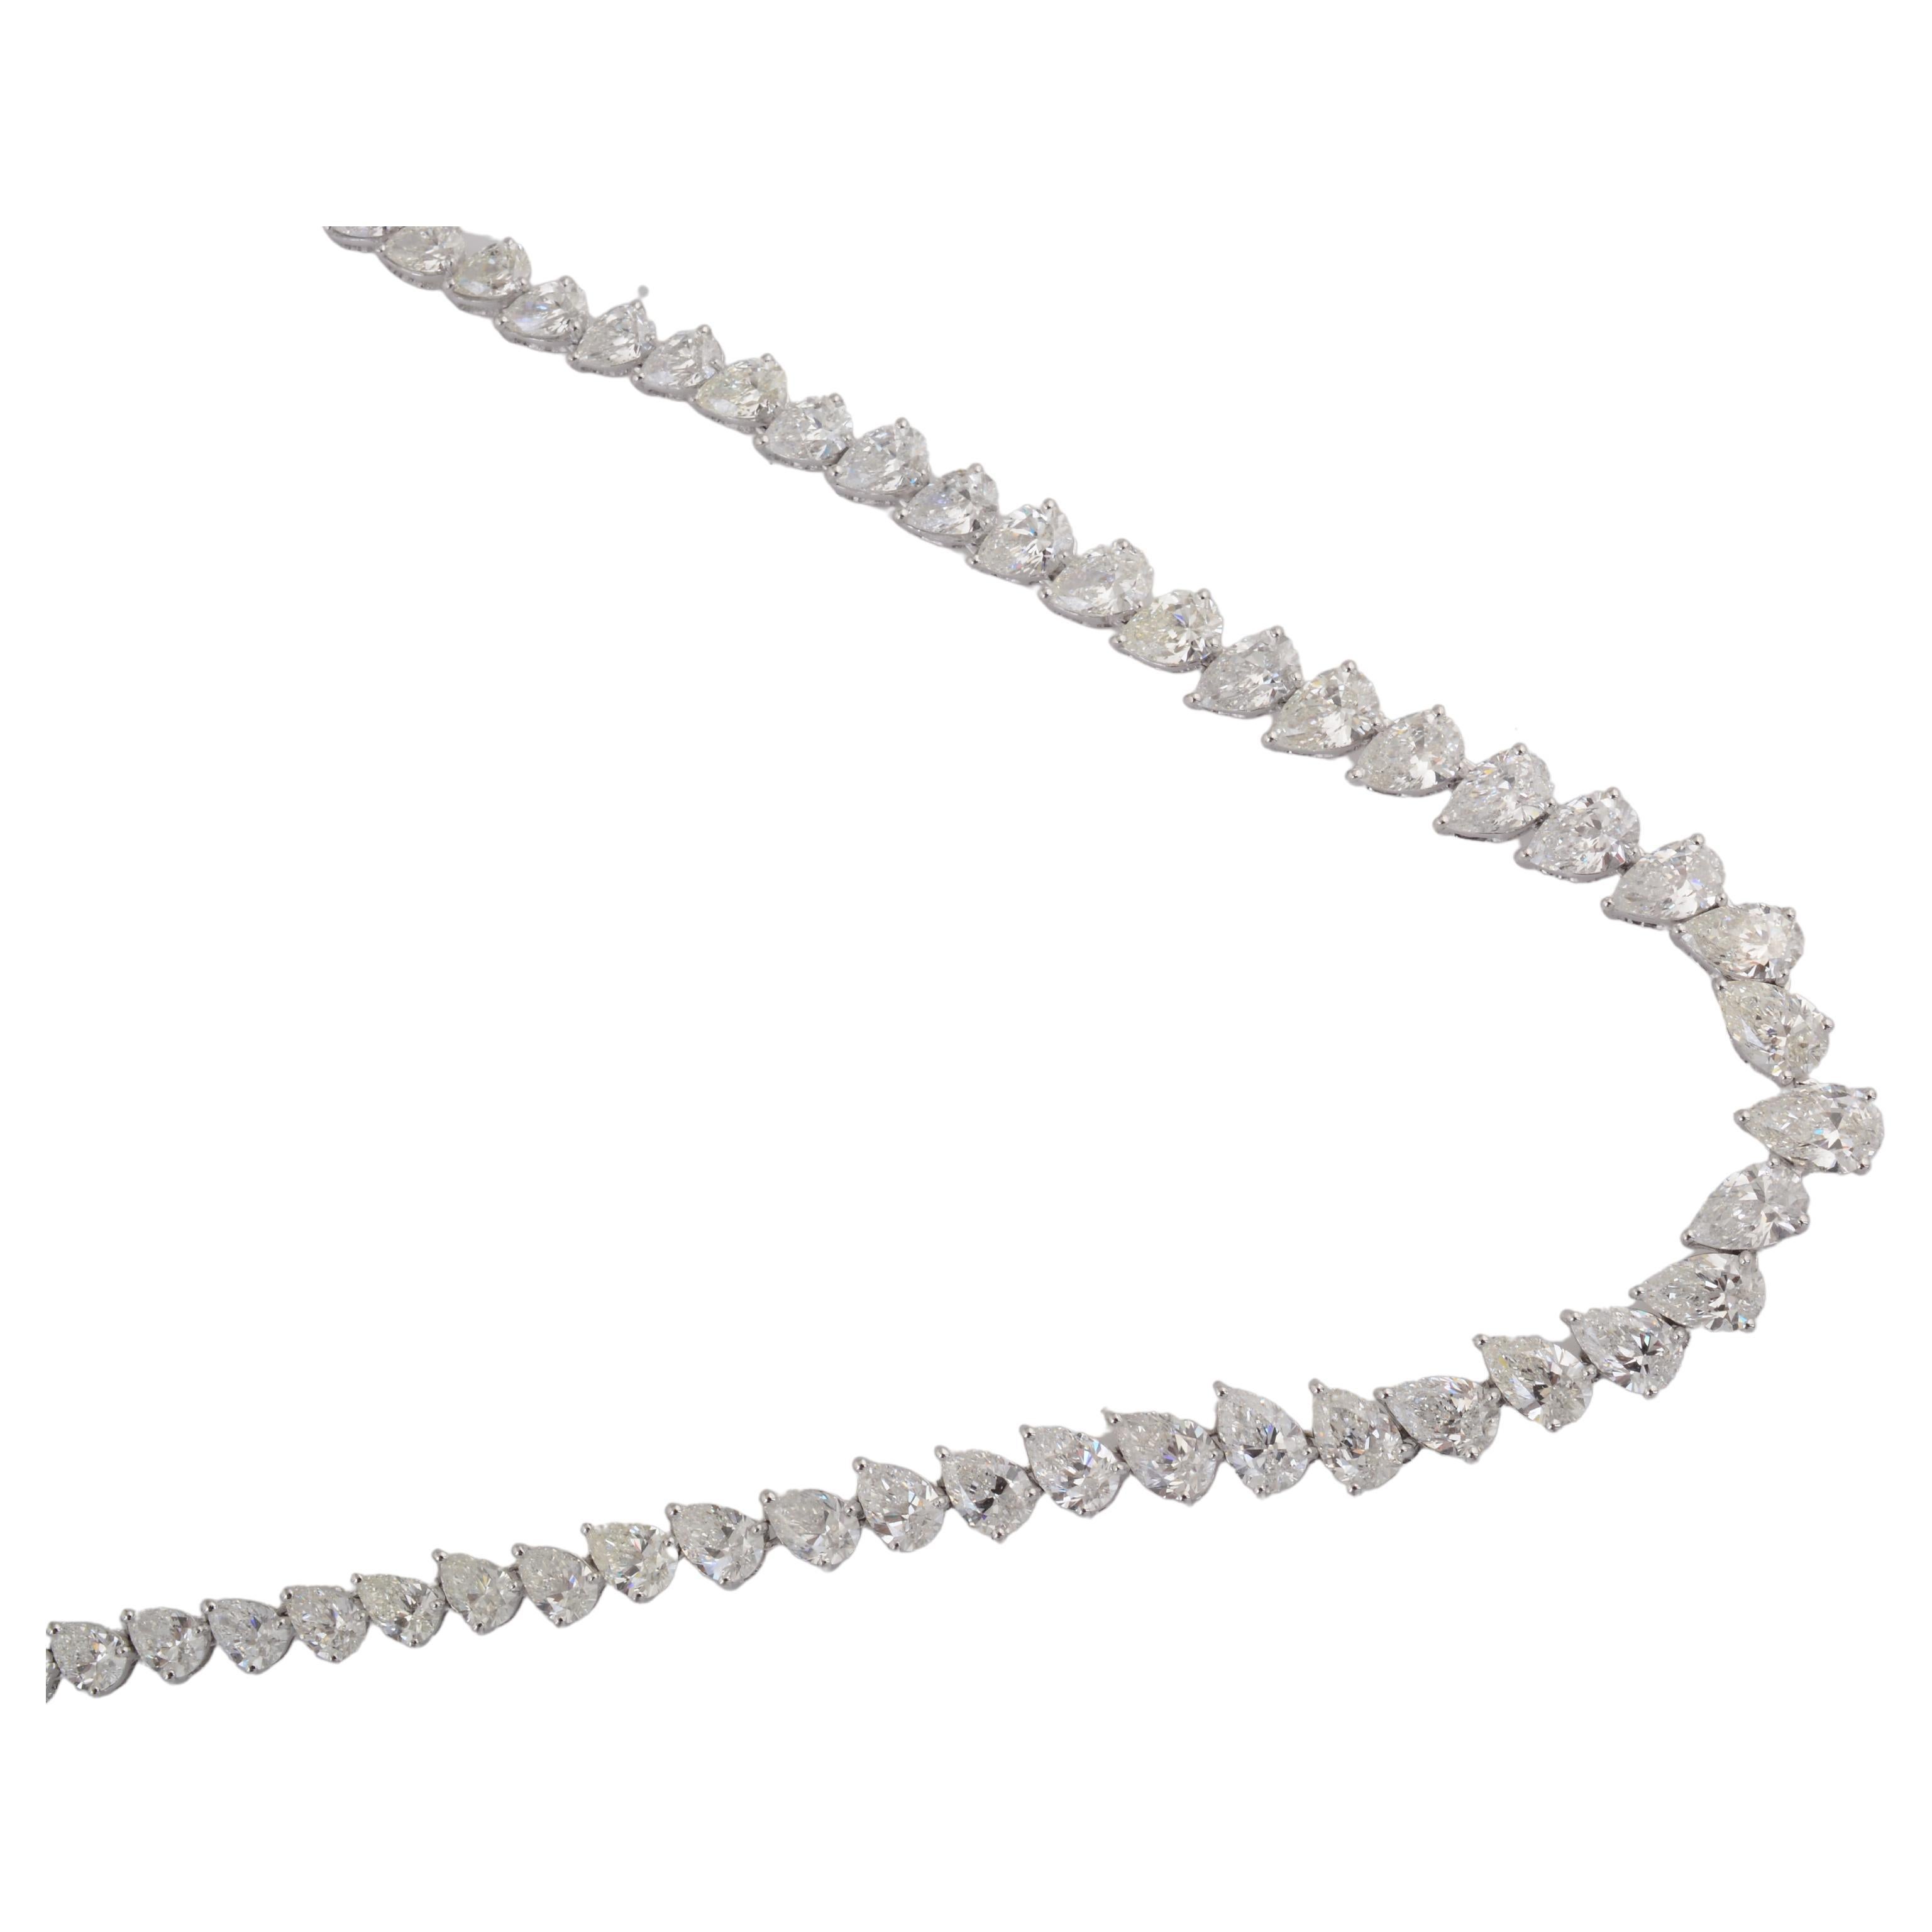 Diese trendige und ansprechende Halskette aus 18 Karat Weißgold von Spectrum Jewels mit Diamantbesatz ist ein Muss für Ihre Accessoire-Kollektion. Diese Designer-Halskette ist ein echter Hingucker, in den es sich zu investieren lohnt.

✧✧Willkommen